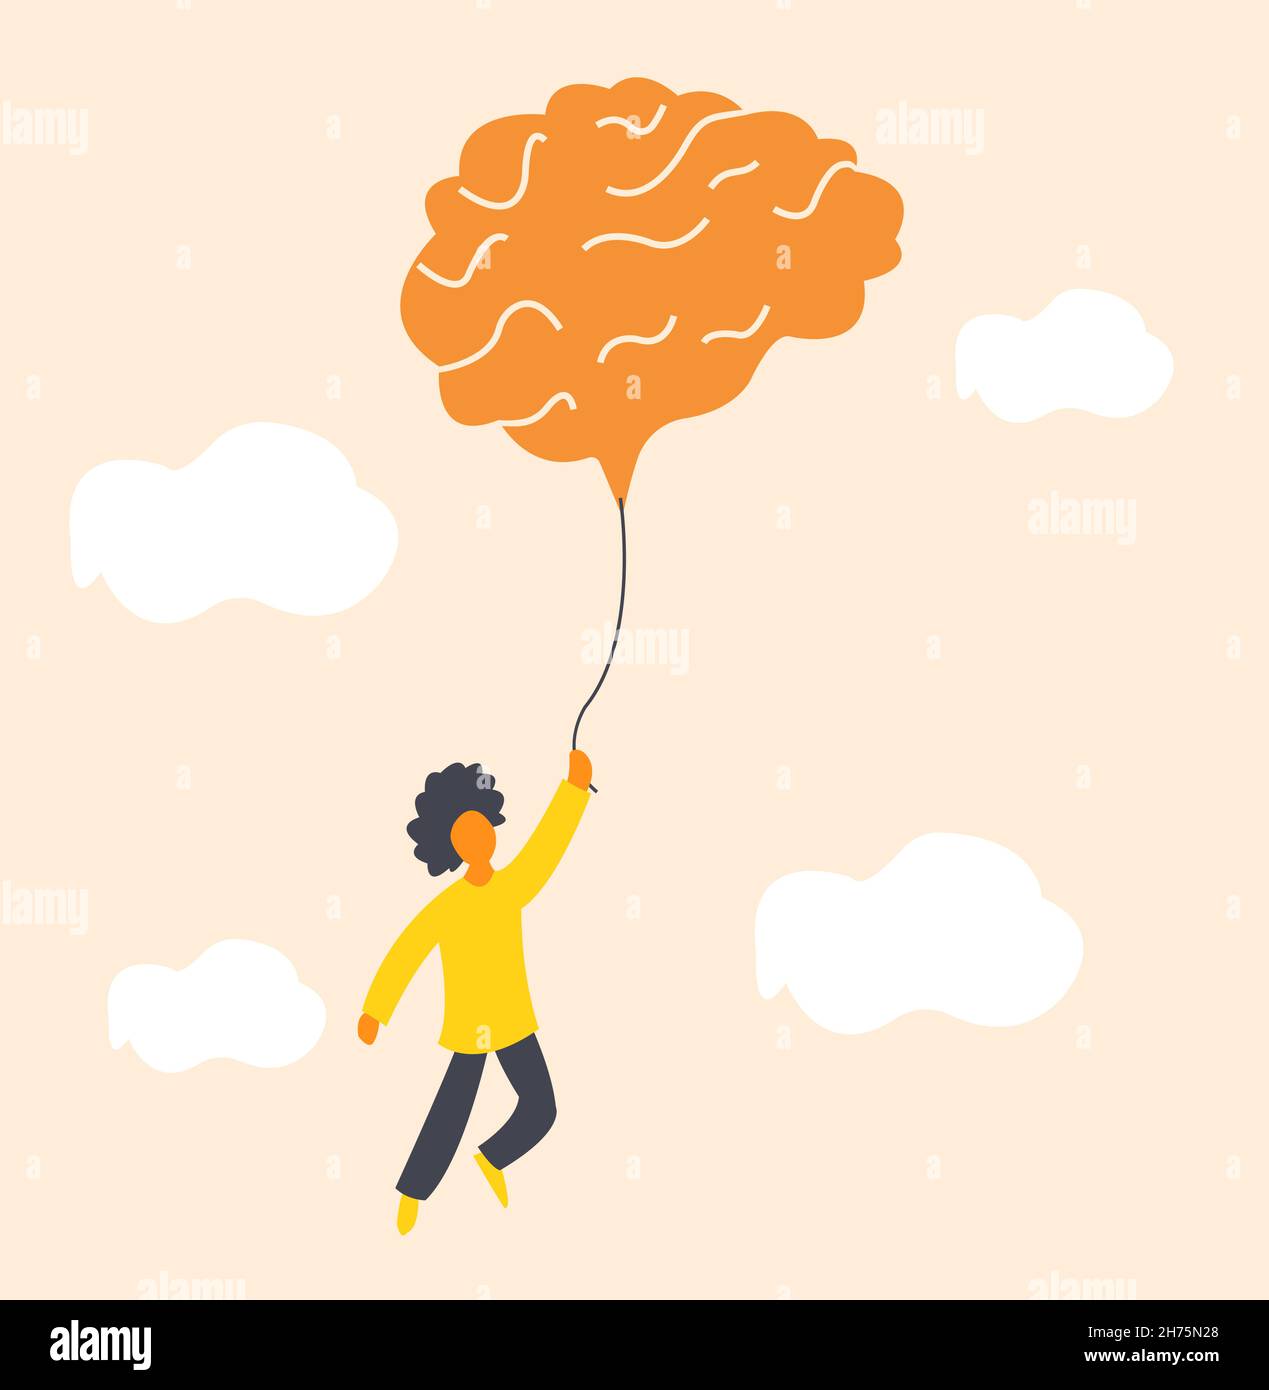 Illustration zum Thema psychische Gesundheit, ein Junge, der mit einem großen Ballon in Gehirnform am Himmel fliegt, der die Bedeutung von Entspannung und Meditation symbolisiert Stock Vektor